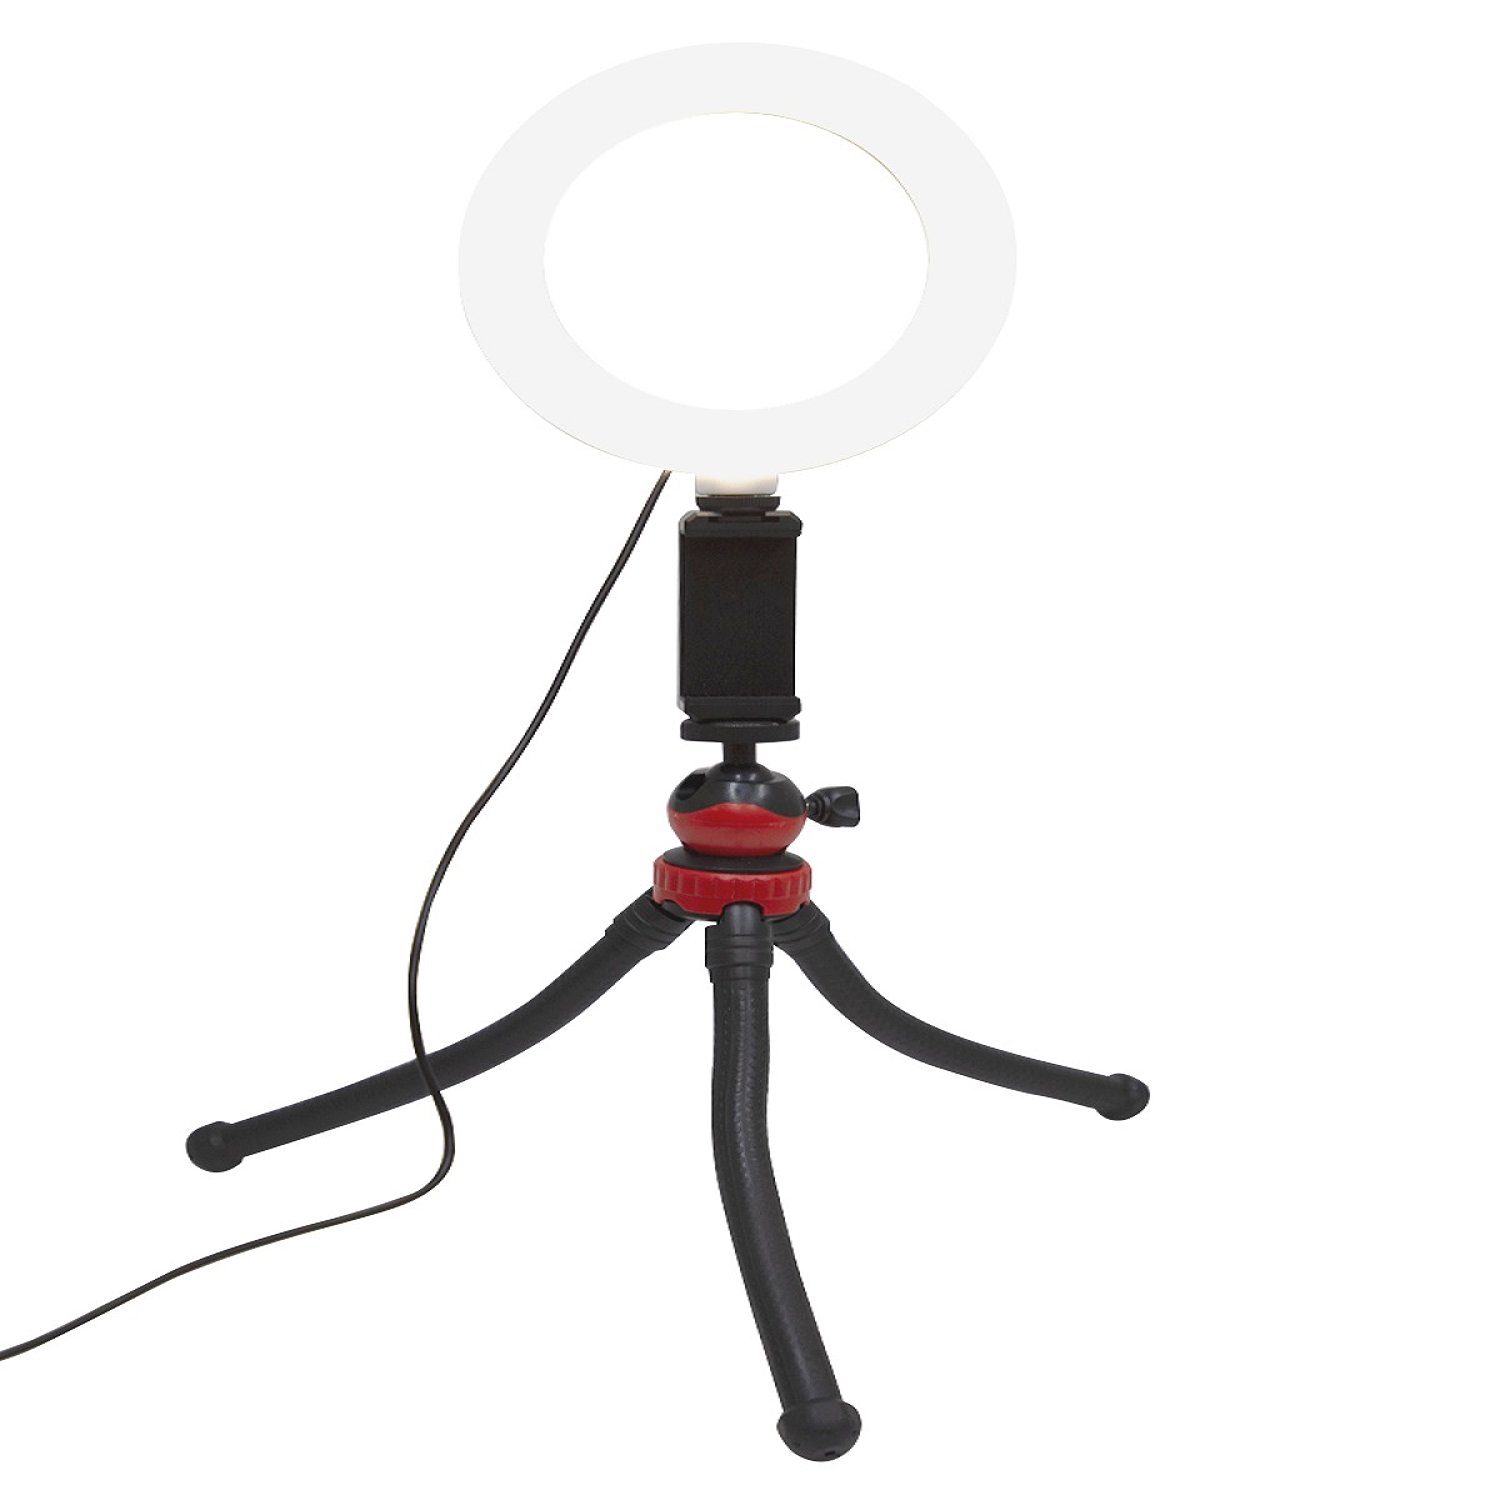 Трипод-осьминог mb mobility MRL-6 с LED светильником, черный мини штатив mobility mb осьминог red ут000032816